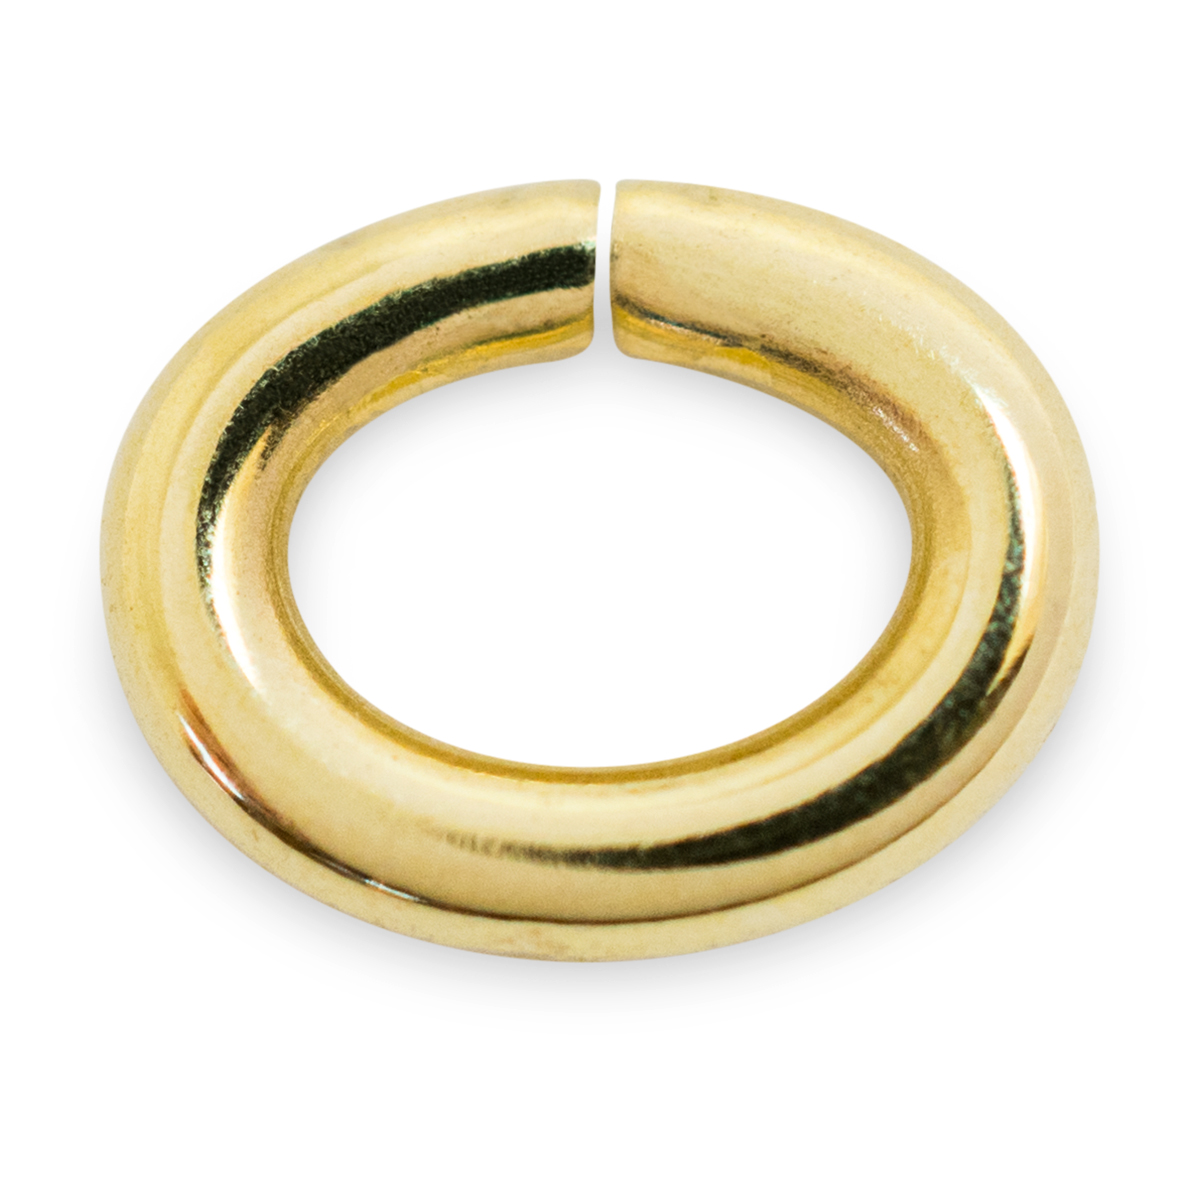 Binderinge, oval, 585/- Gelbgold, Ø 5 mm, Stärke 0,9 mm